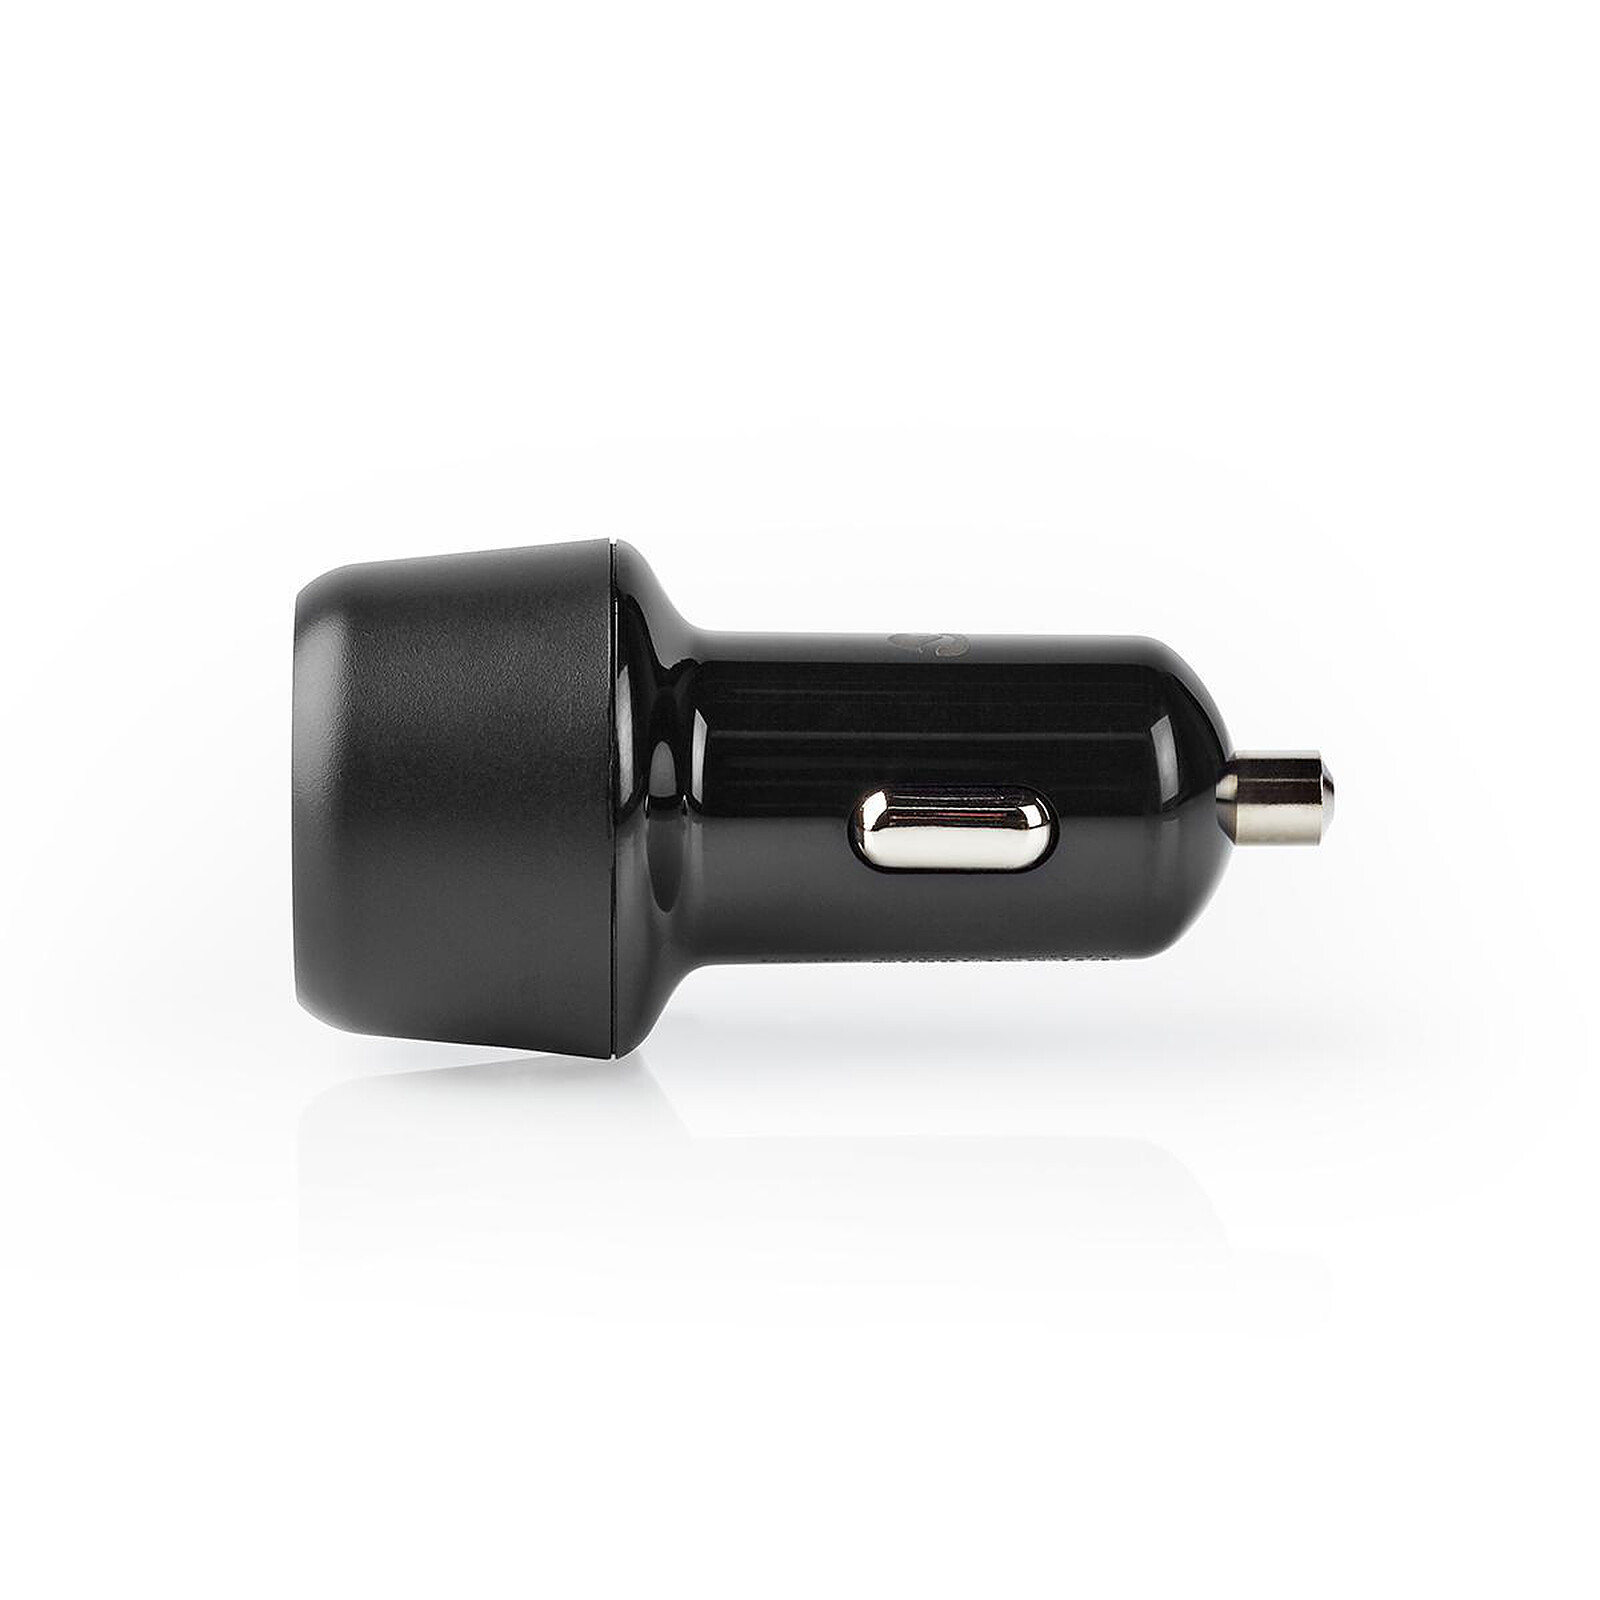 Mini chargeur double USB 3.1A sur prise allume-cigare - Chargeur allume- cigare - Garantie 3 ans LDLC